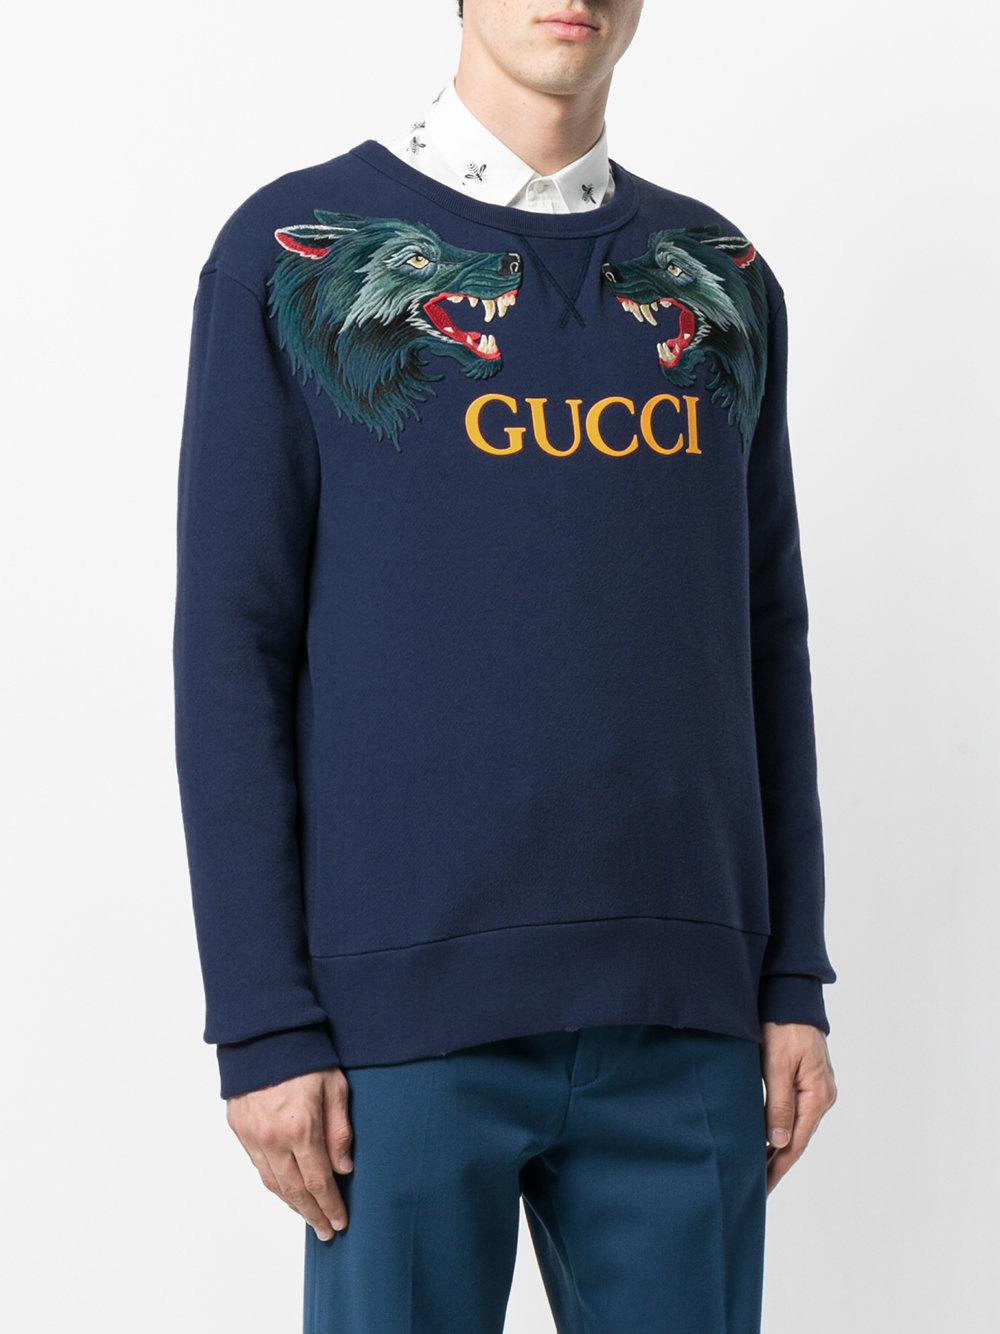 Gucci Wolf Sweatshirt Hotsell, 59% OFF | ilikepinga.com